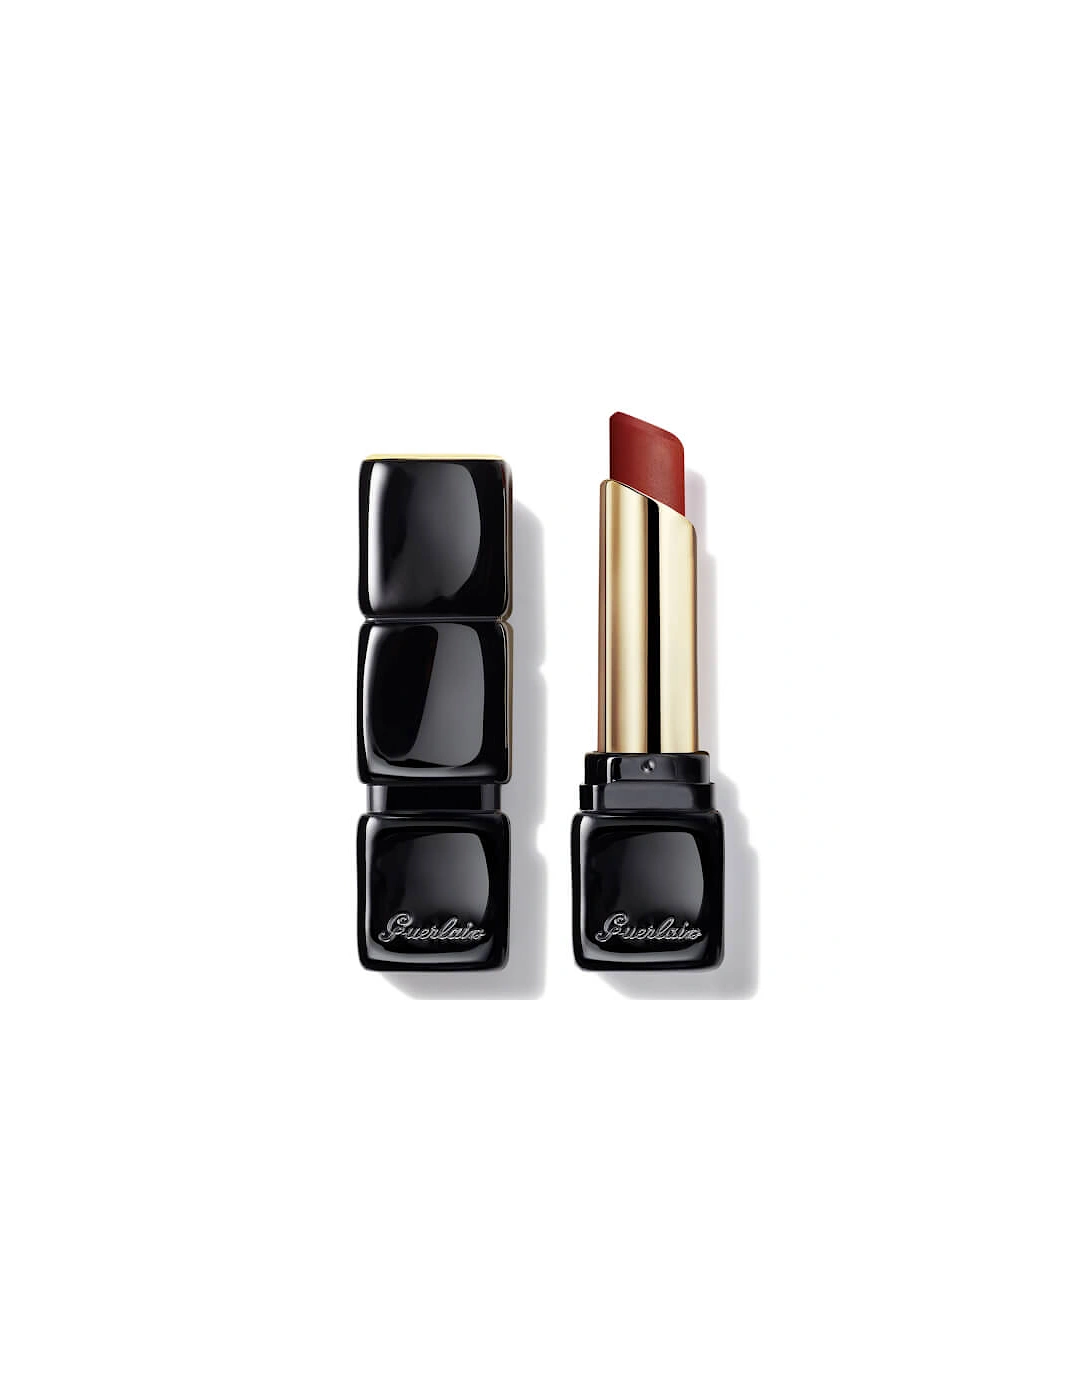 Kisskiss Tender Matte 16 Hour Comfort Lightweight Luminous Matte Lipstick - 770 Desire Red, 2 of 1